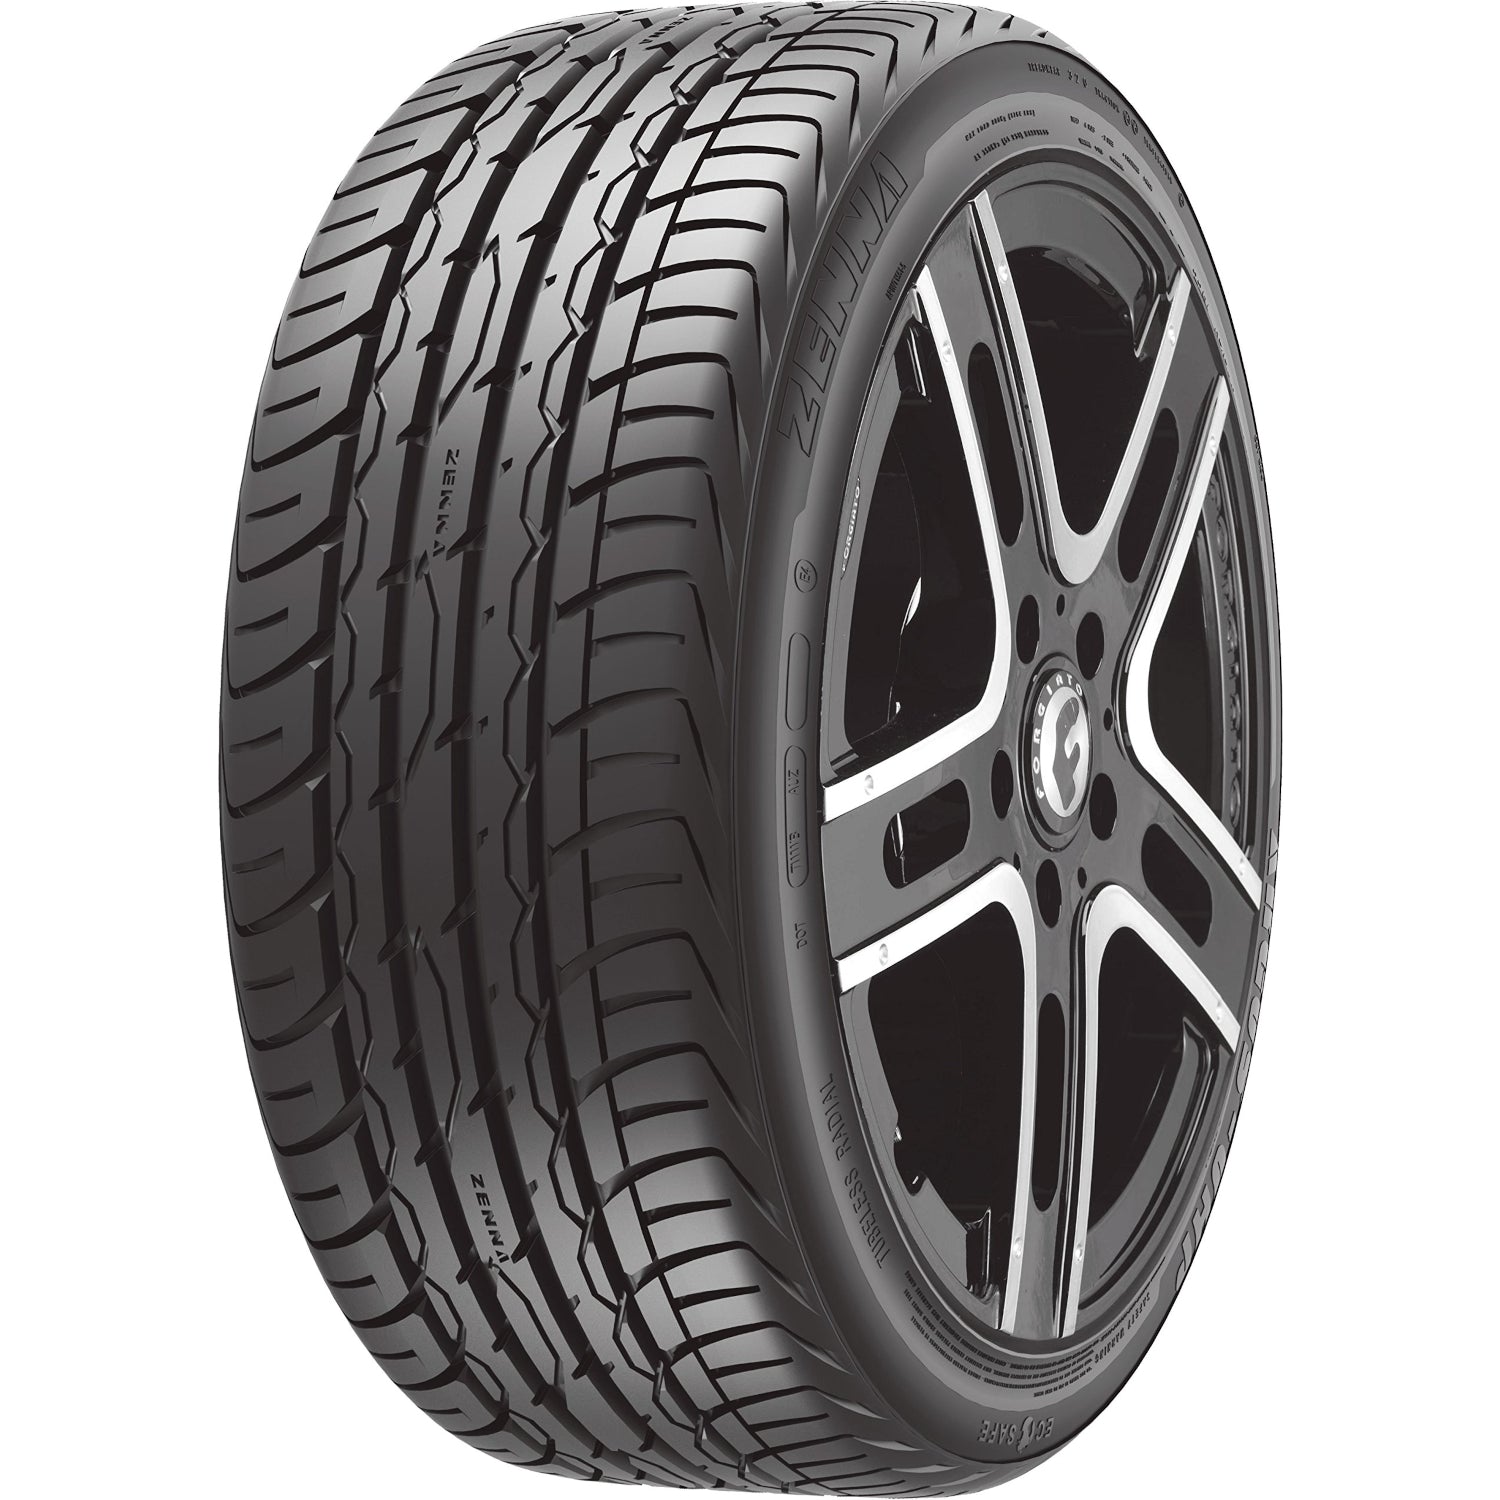 Zenna Argus UHP 275/40ZR20 (28.7x10.8R 20) Tires